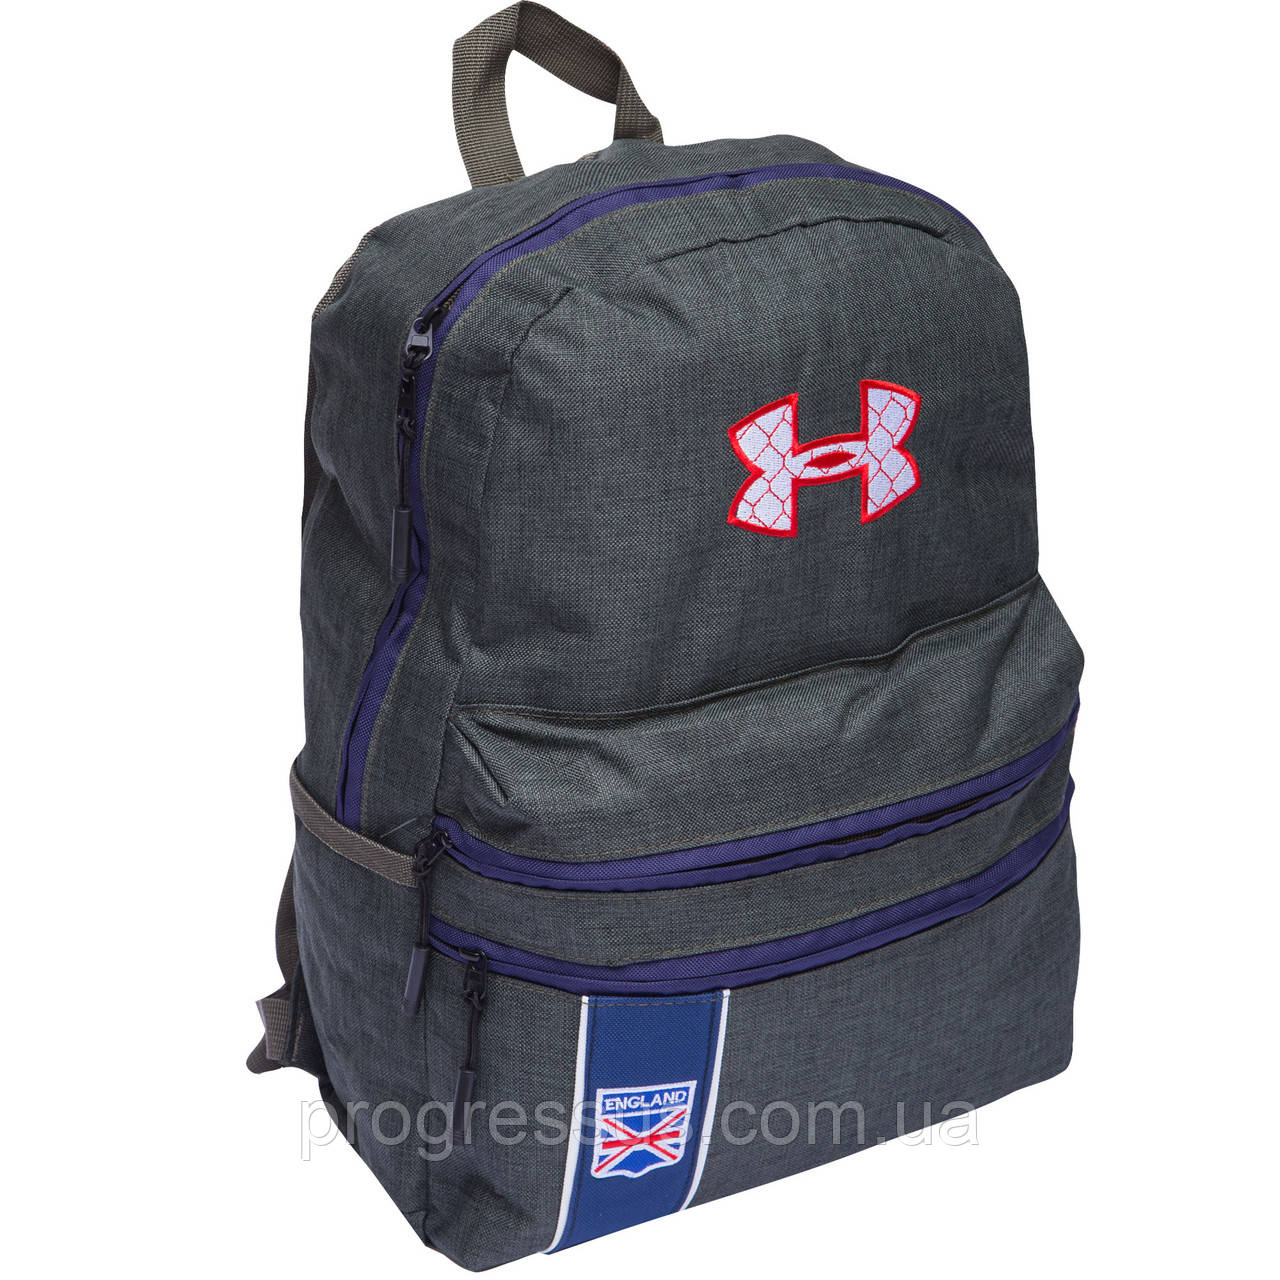 Рюкзак Under Armour для хлопчиків 44x31x20см хакі/ Шкільний рюкзак /Повсякденний рюкзак